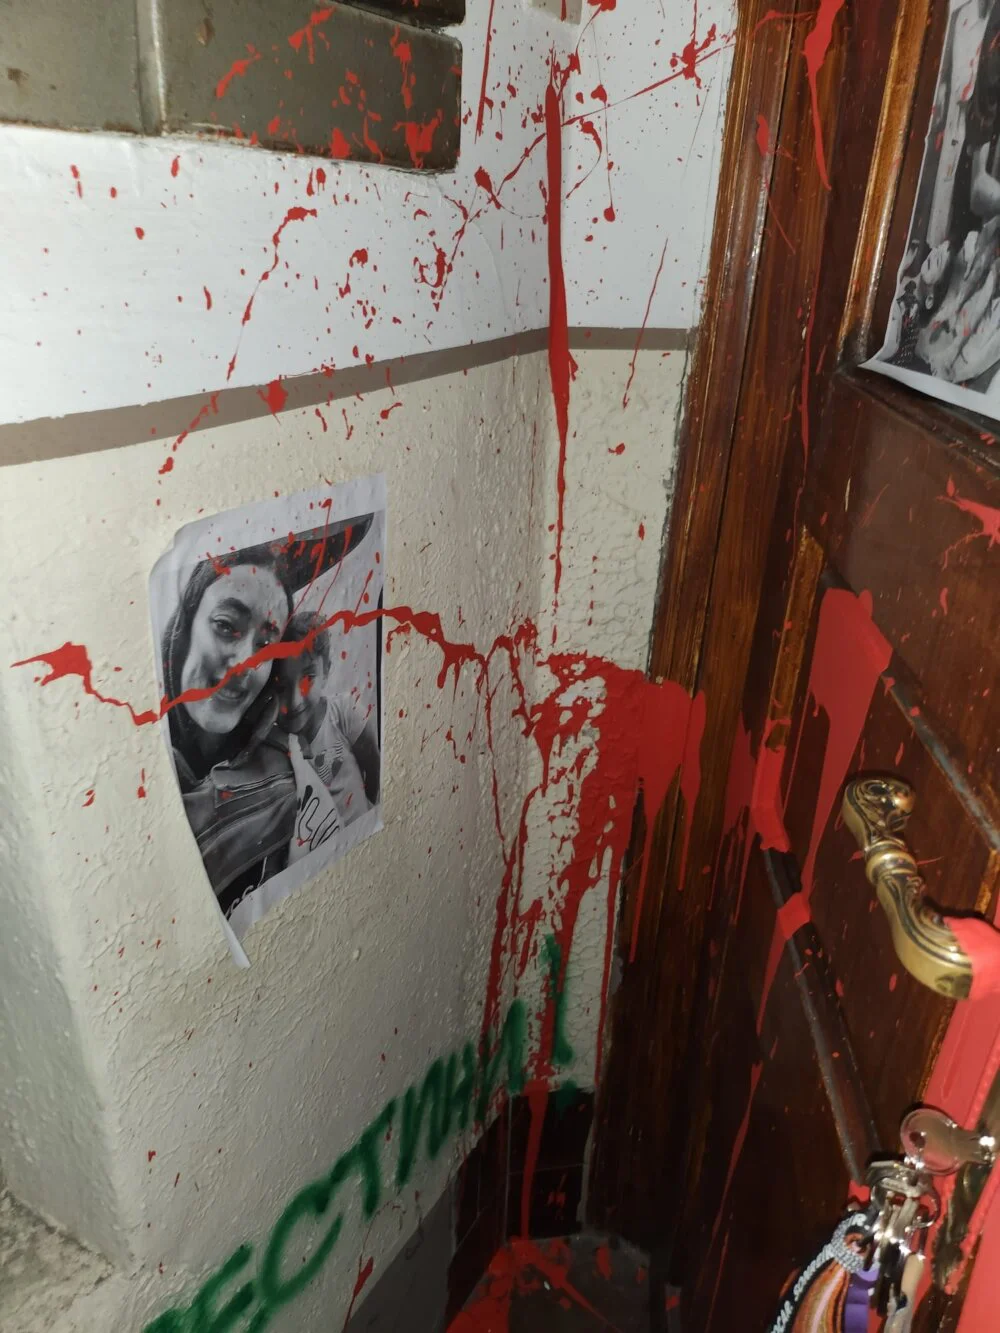 Antiizraelski grafiti mržnje na prostorijama organizacije Haver Srbija: "Ne promovišemo rat i nasilje, niti se radujemo događajima na Bliskom istoku" 2